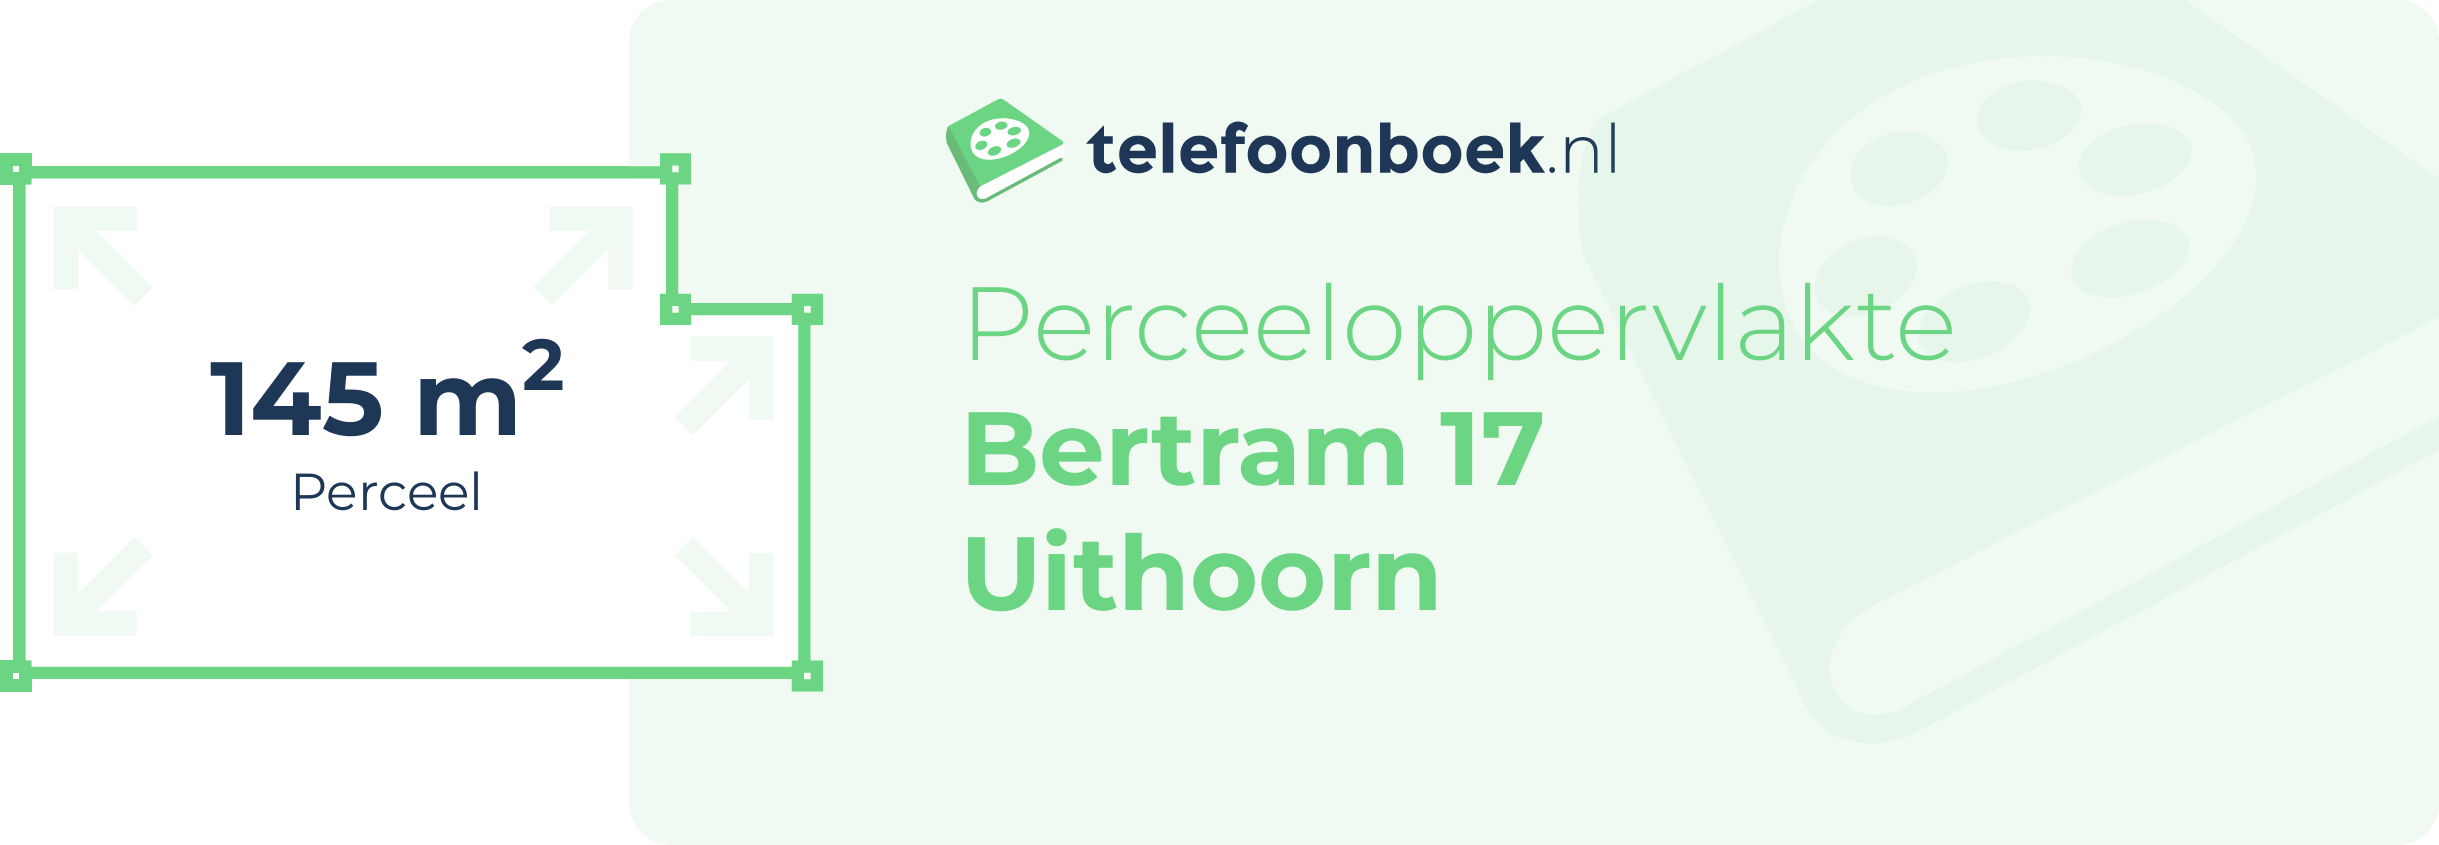 Perceeloppervlakte Bertram 17 Uithoorn